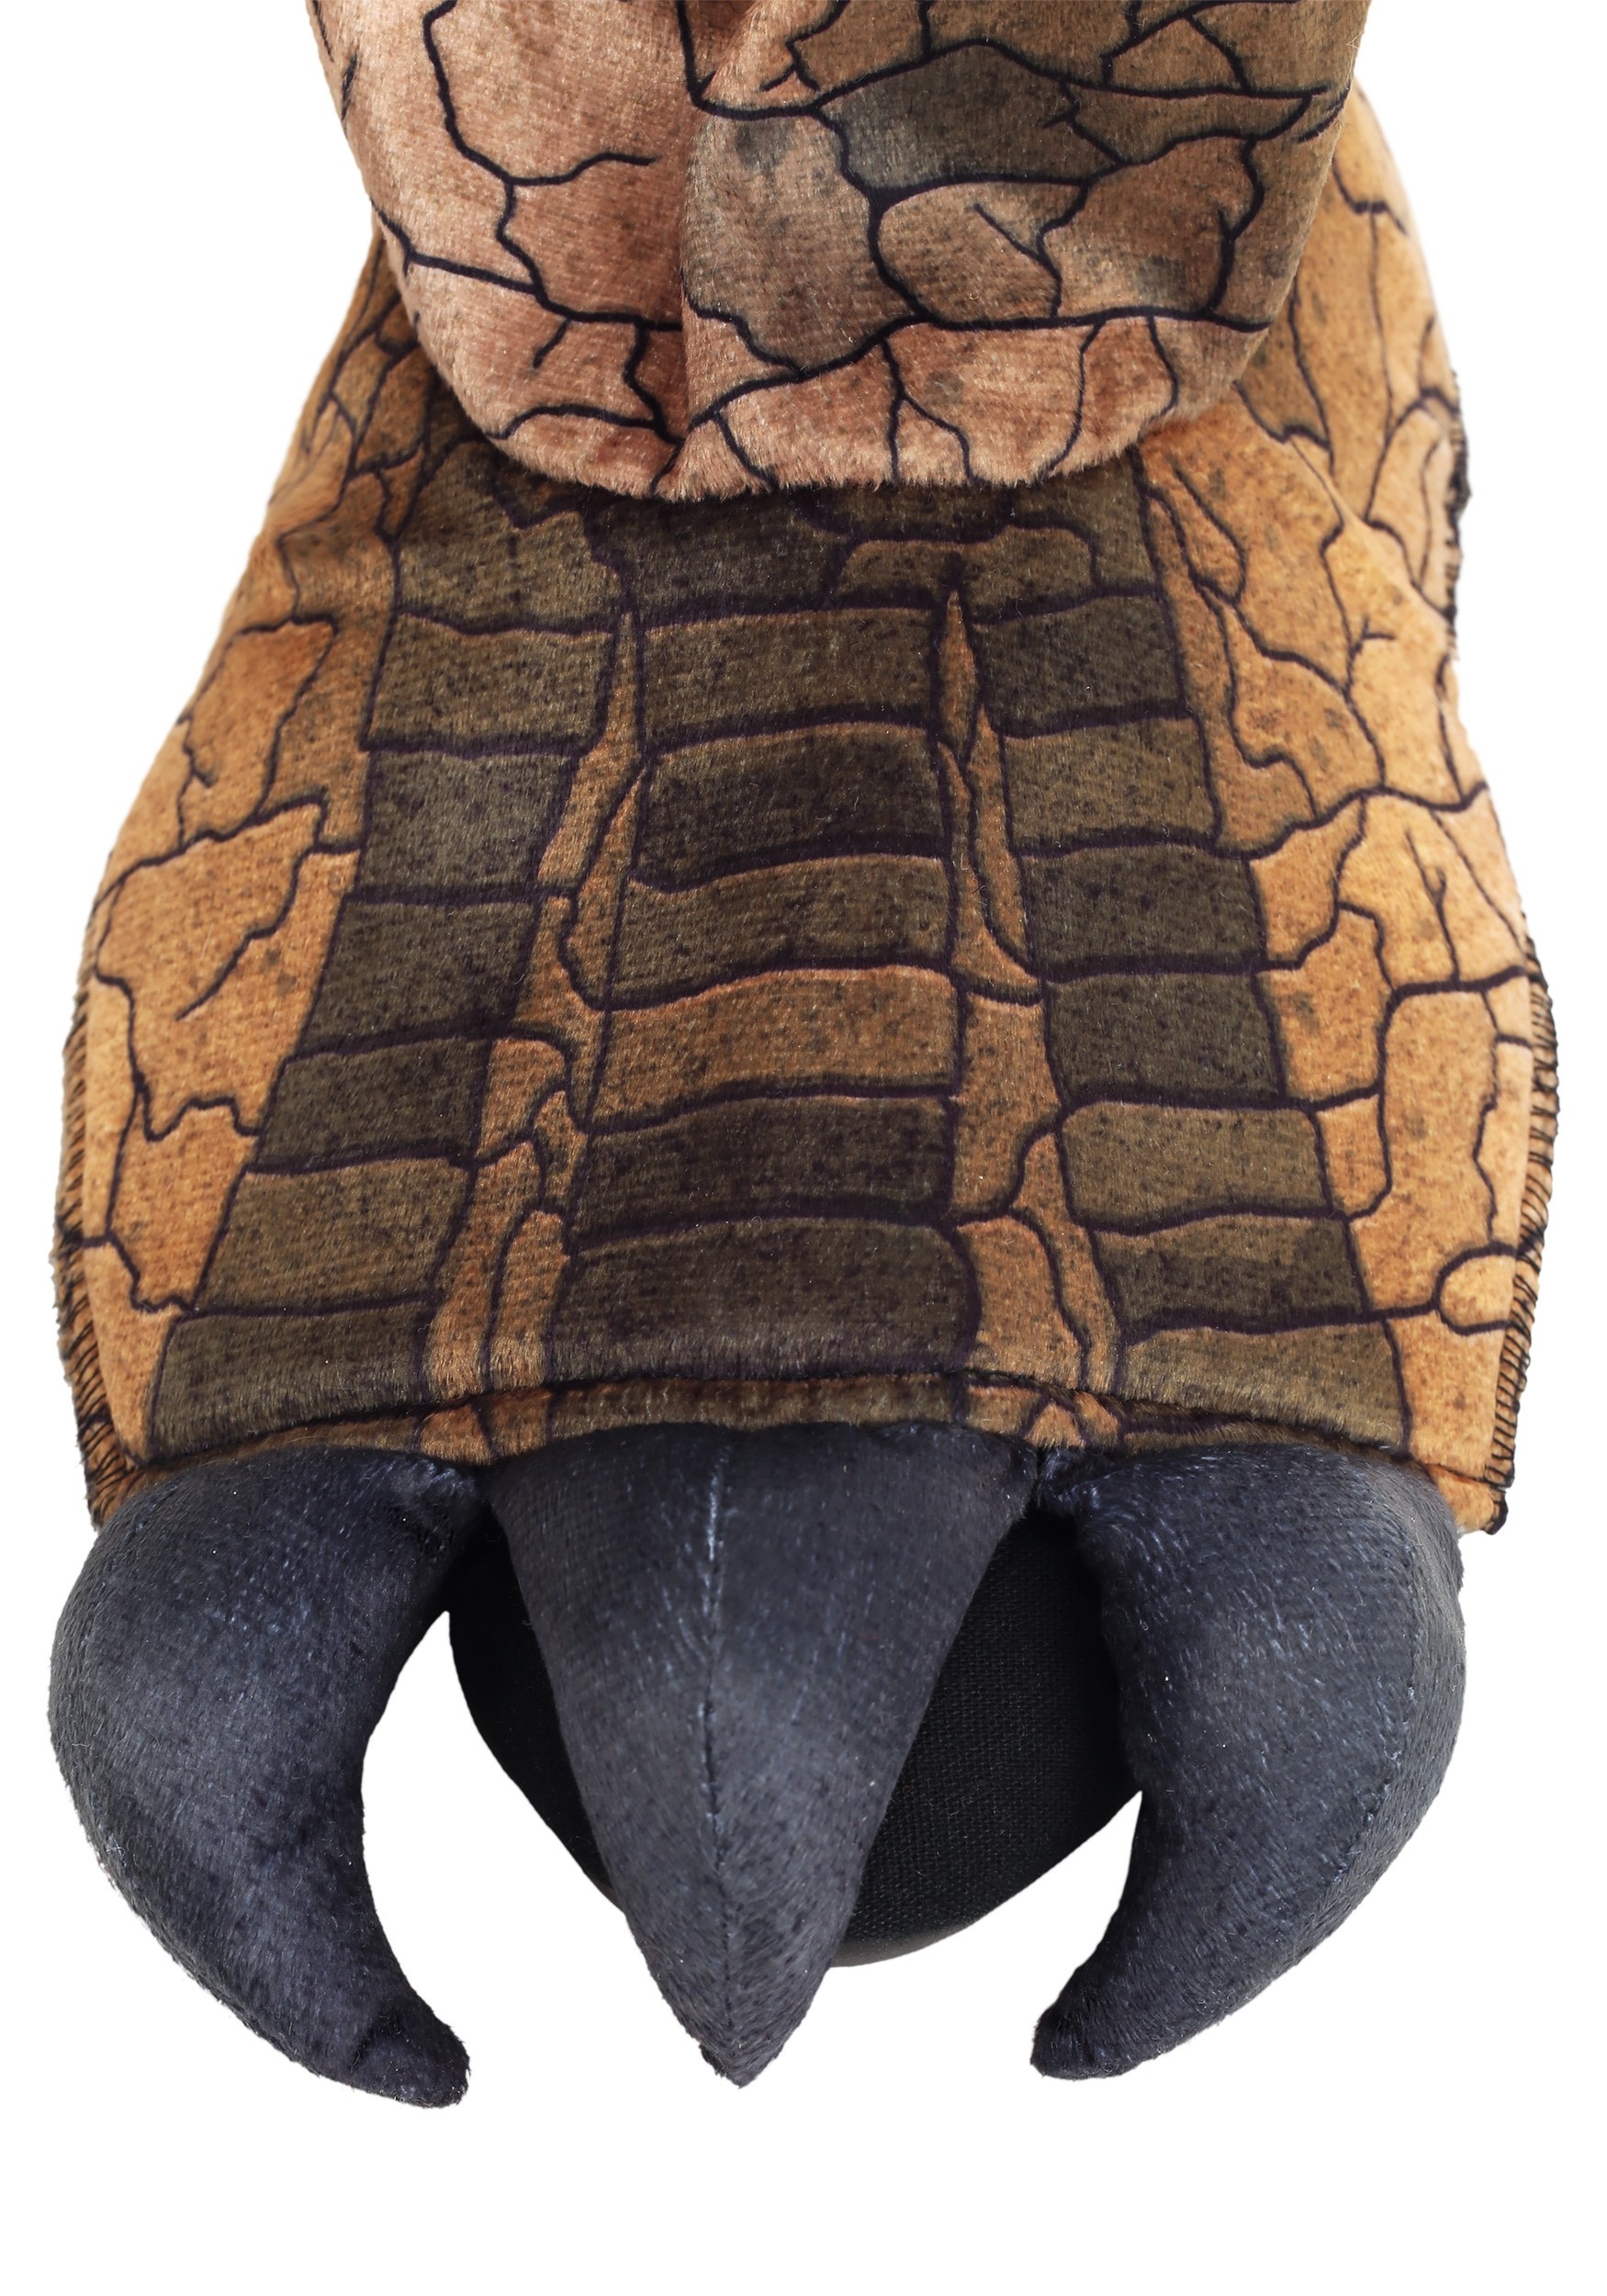 Prehistoric T-Rex Fancy Dress Costume For Men